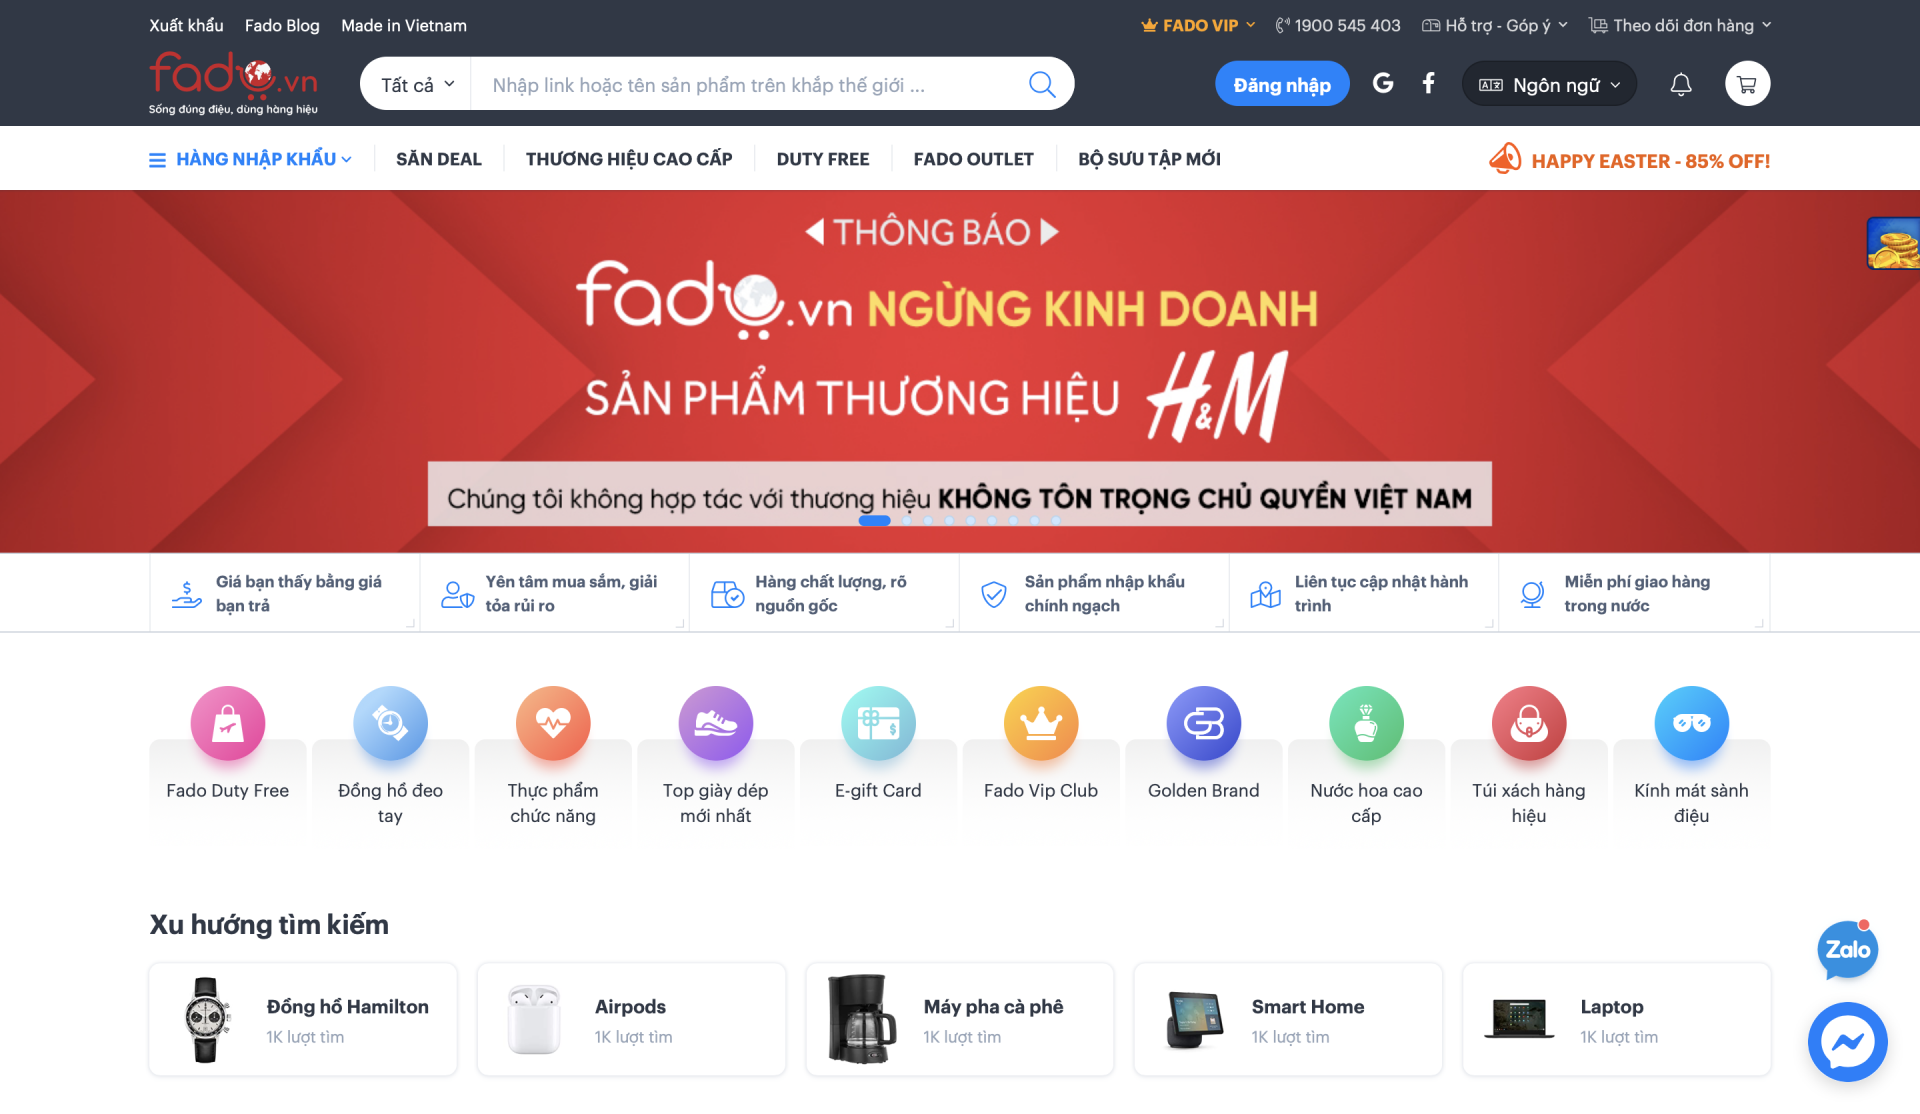 电商平台Fado.vn 无限期下架H&M所有商品